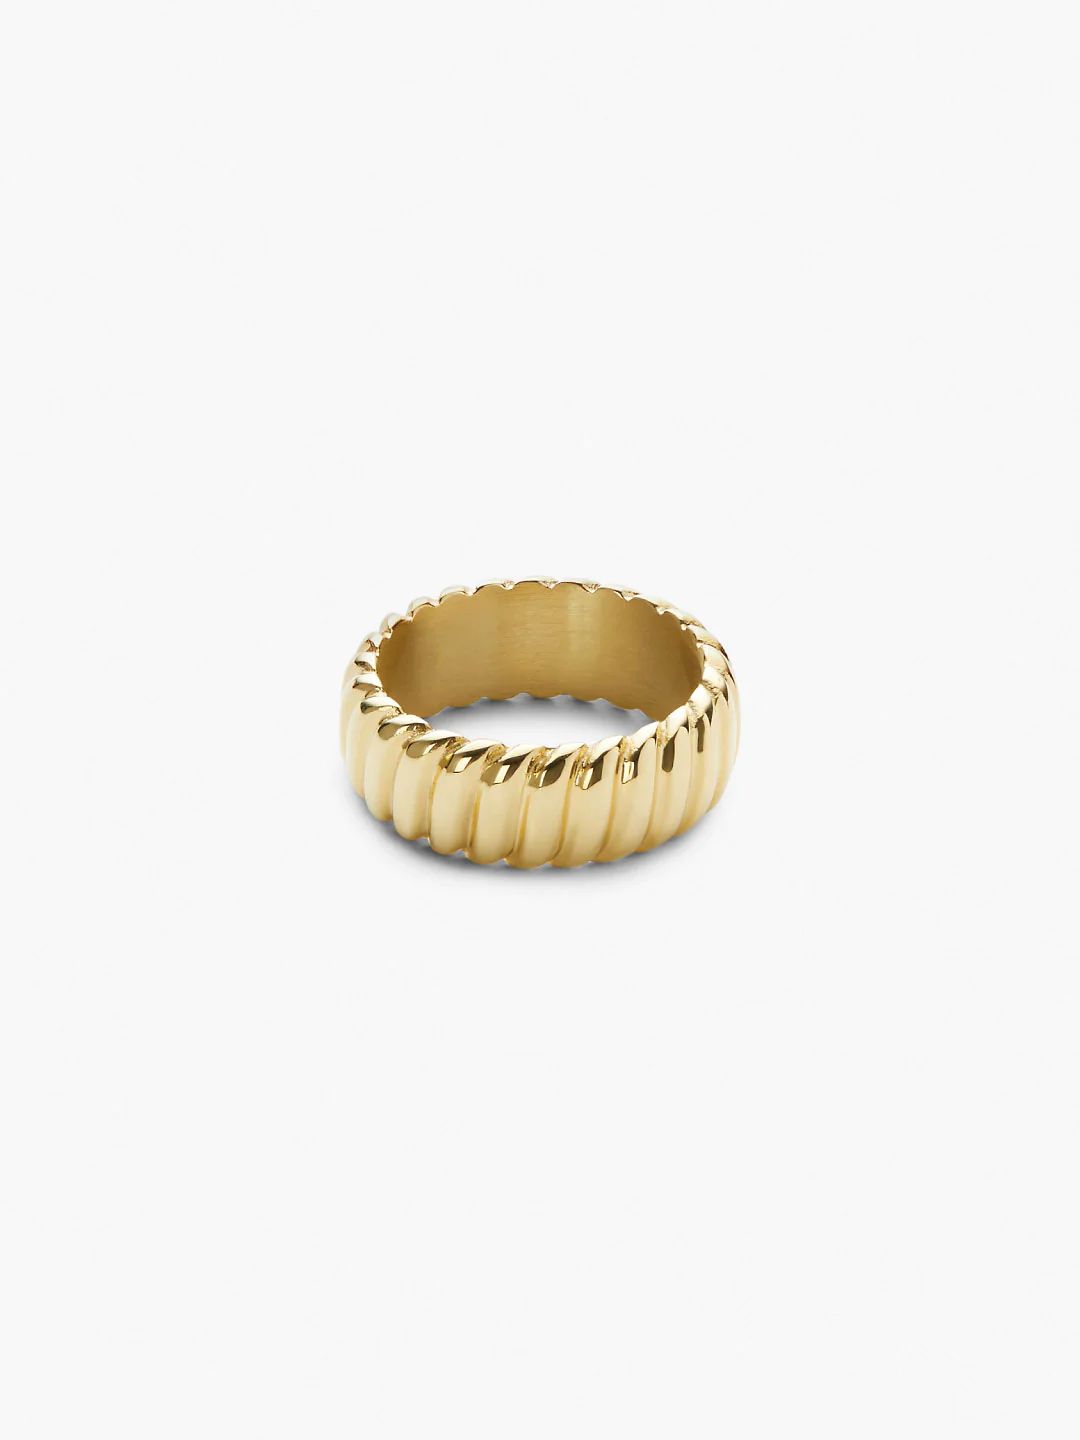 Gold Band Ring | Ana Luisa